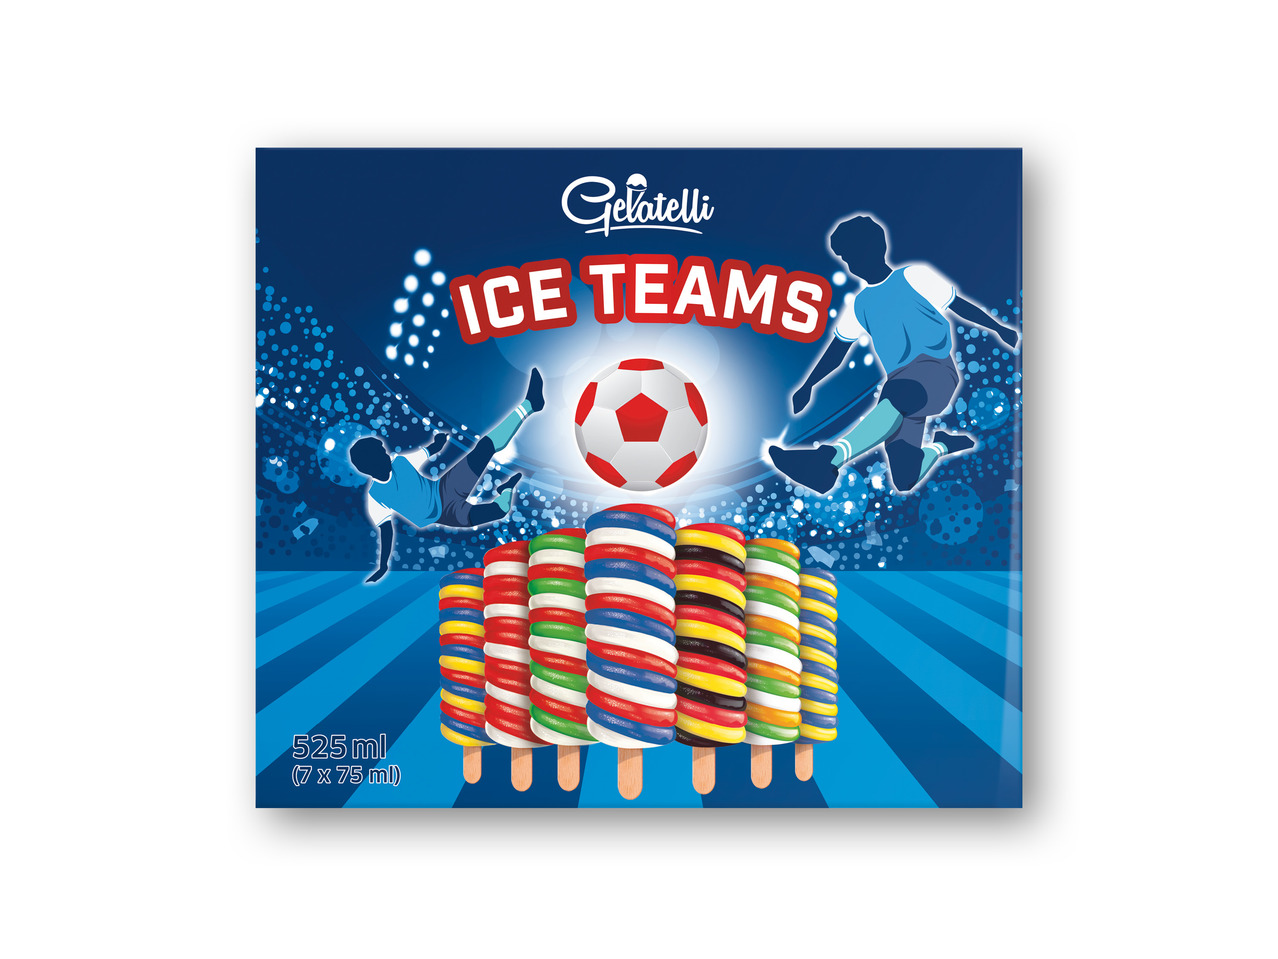 GELATELLI Ice teams